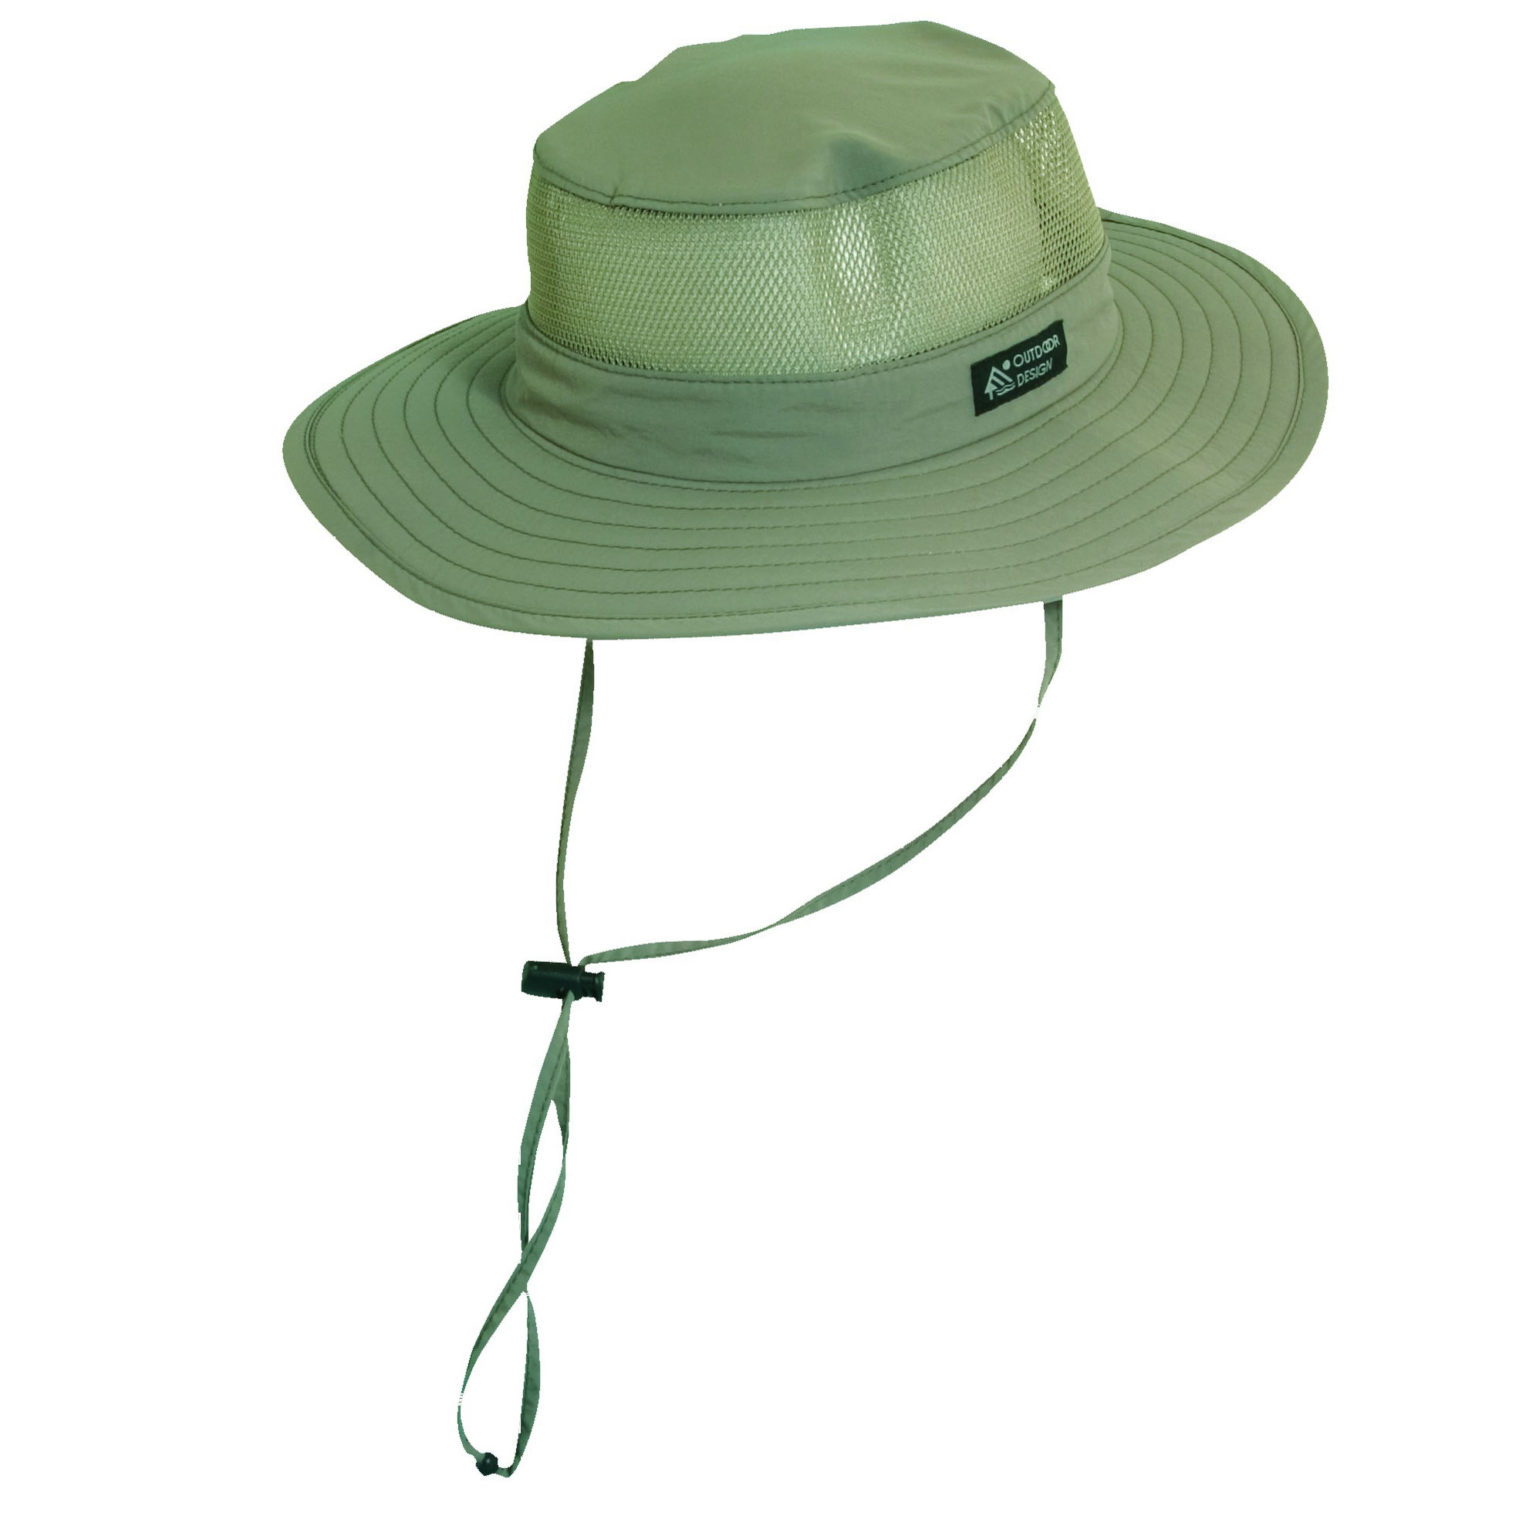 Supplex Nylon Boonie Hat with Mesh Sidewall – Explorer Hats